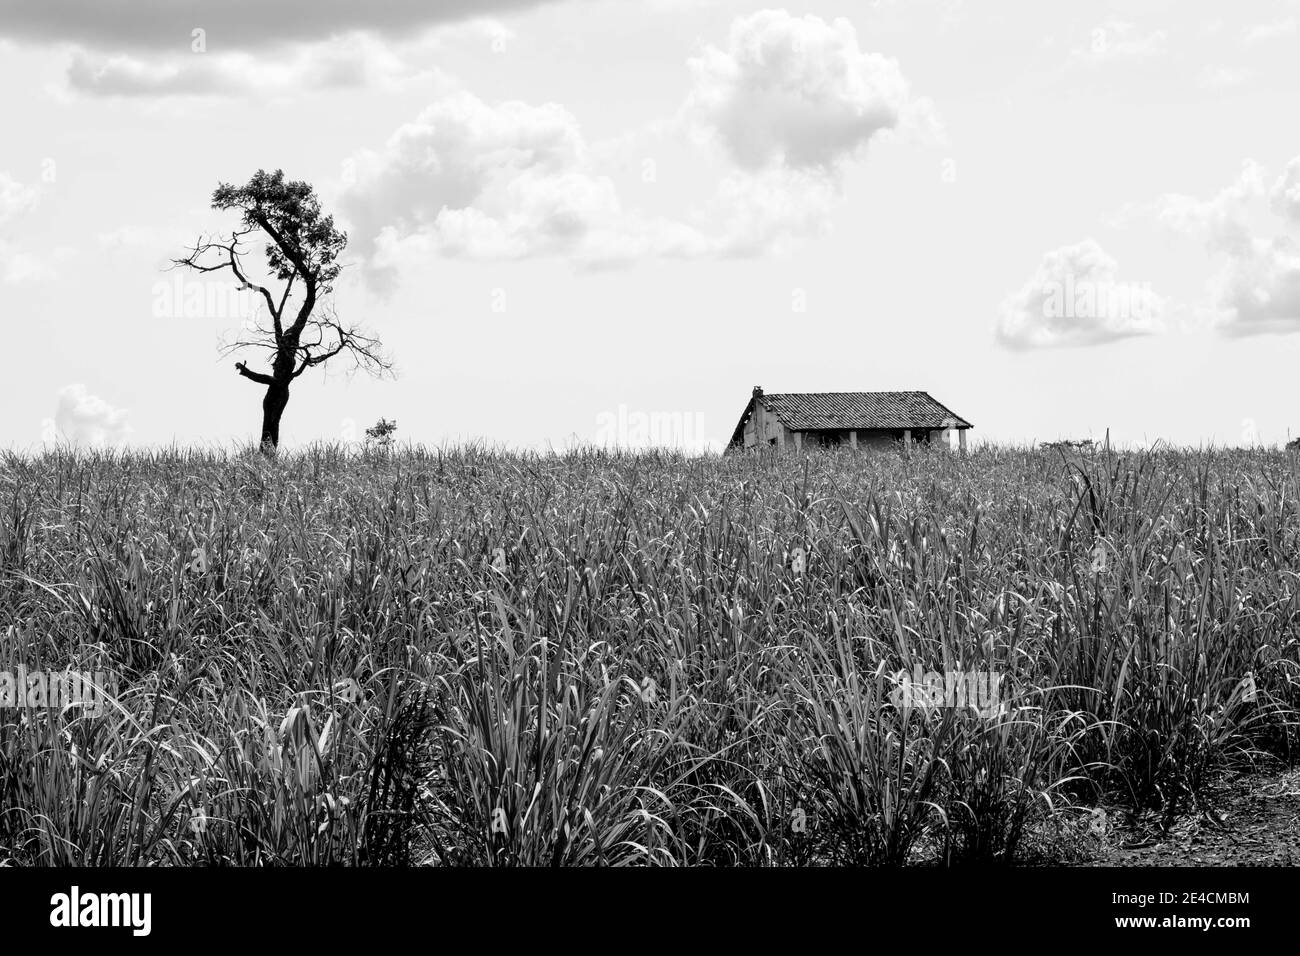 Maison de campagne sur le terrain sur paysage nature paysage. Un arbre est près de la maison isolée abandonnée. Herbe verte et ciel gris nuageux. [Noir et blanc] Banque D'Images